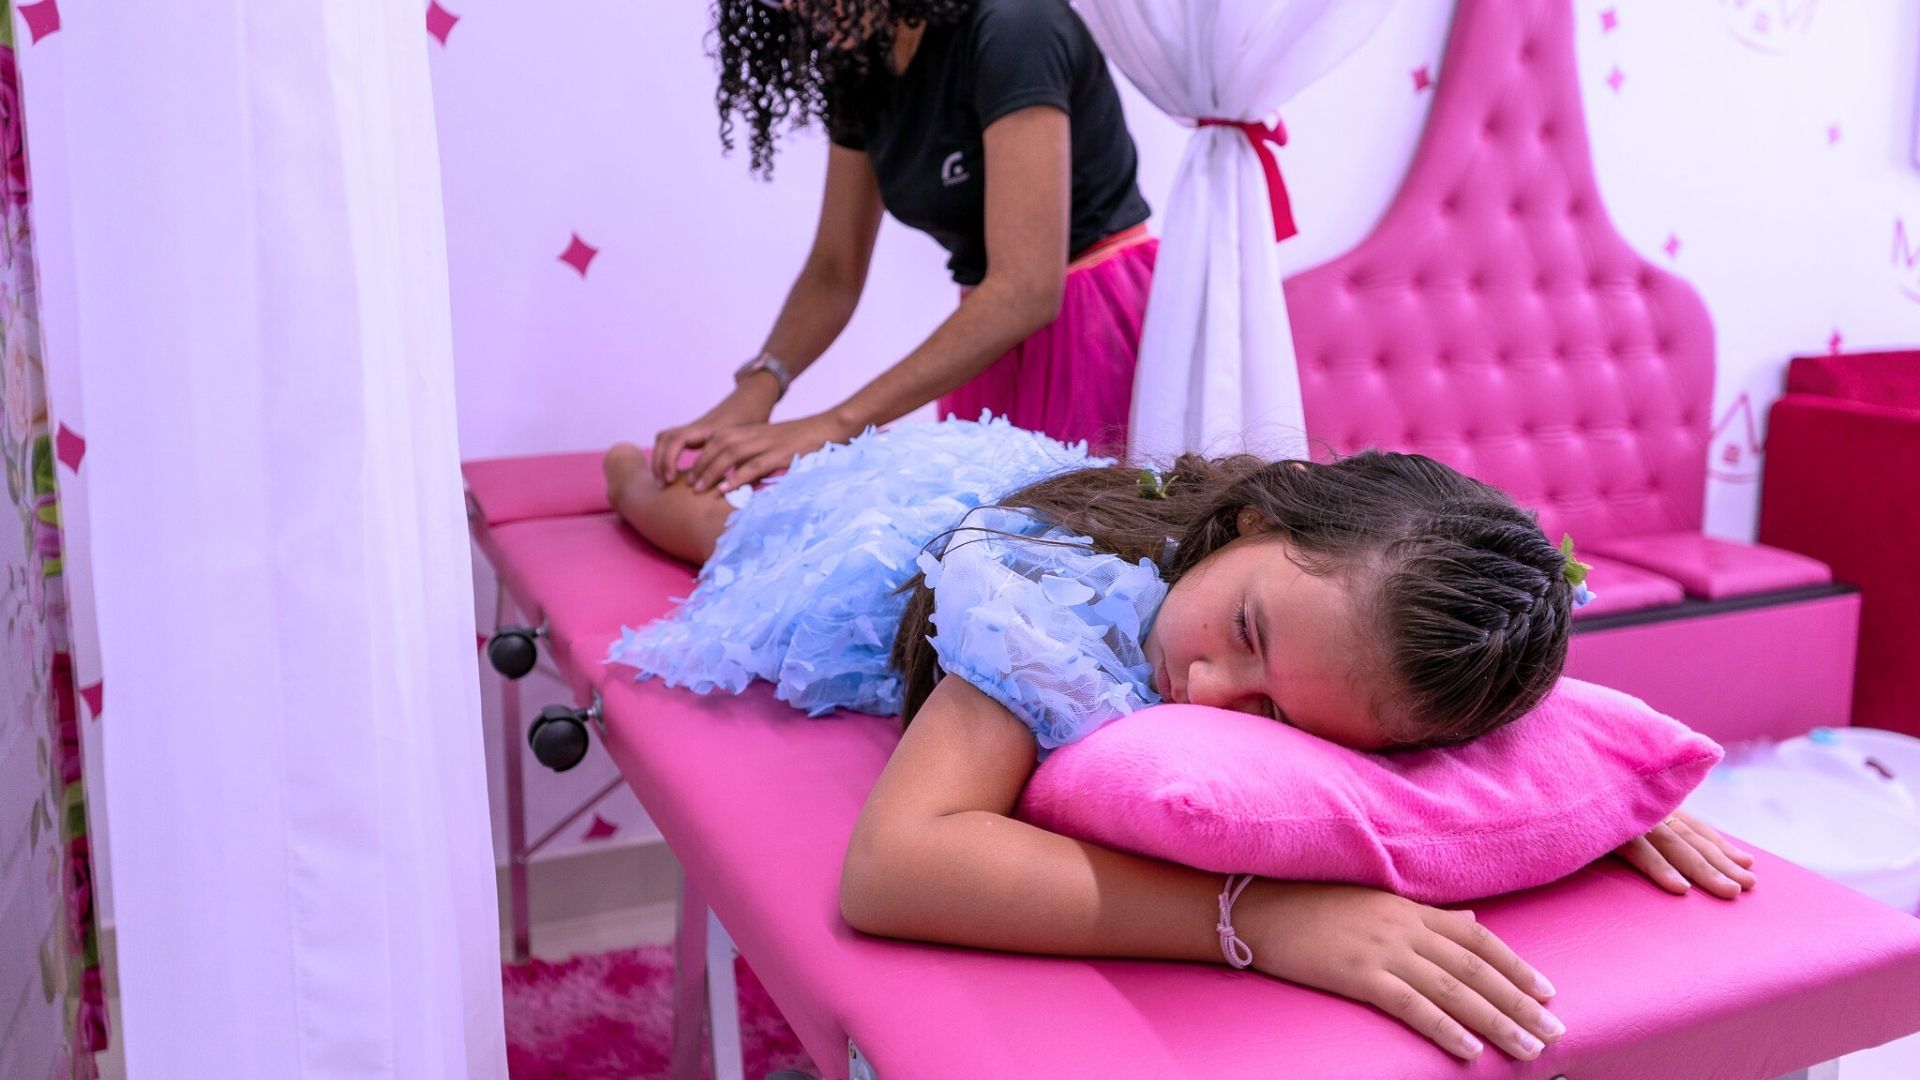 Para comemorar aniversário de 7 anos, menina faz 'spa day' para convidadas  e viraliza na web, Mato Grosso do Sul